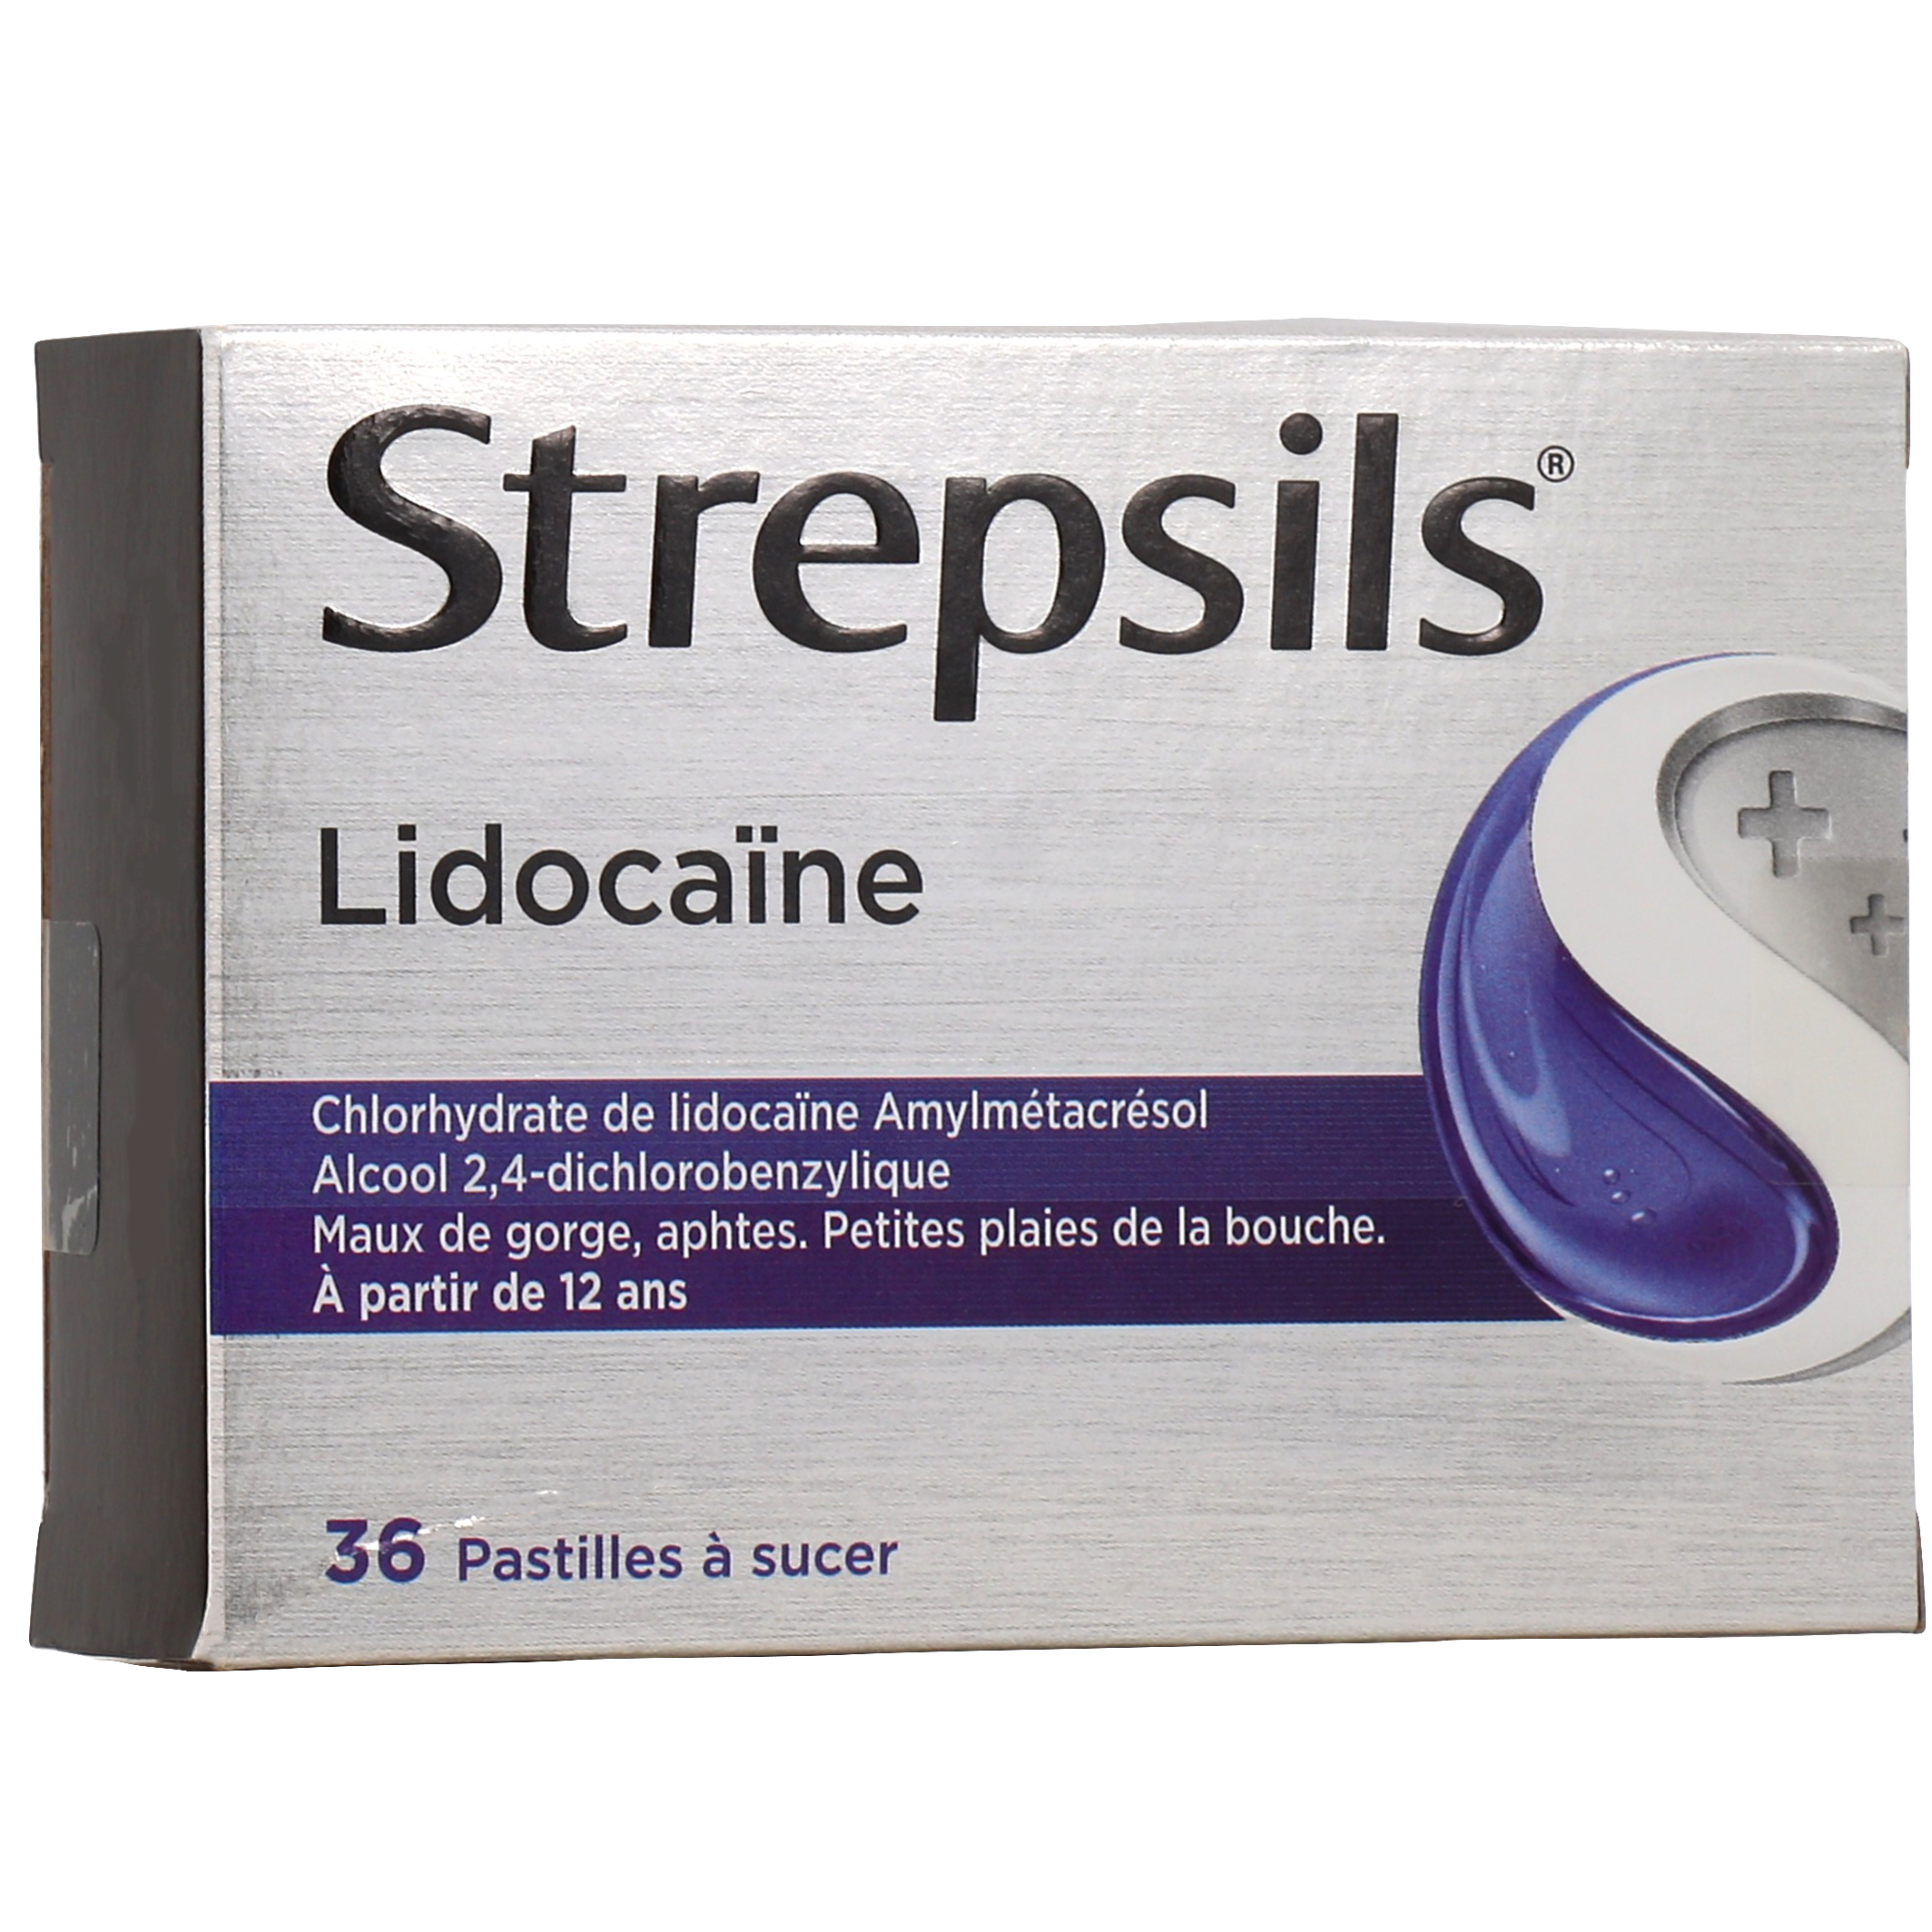 Humex mal de gorge lidocaine pastilles antiseptiques et